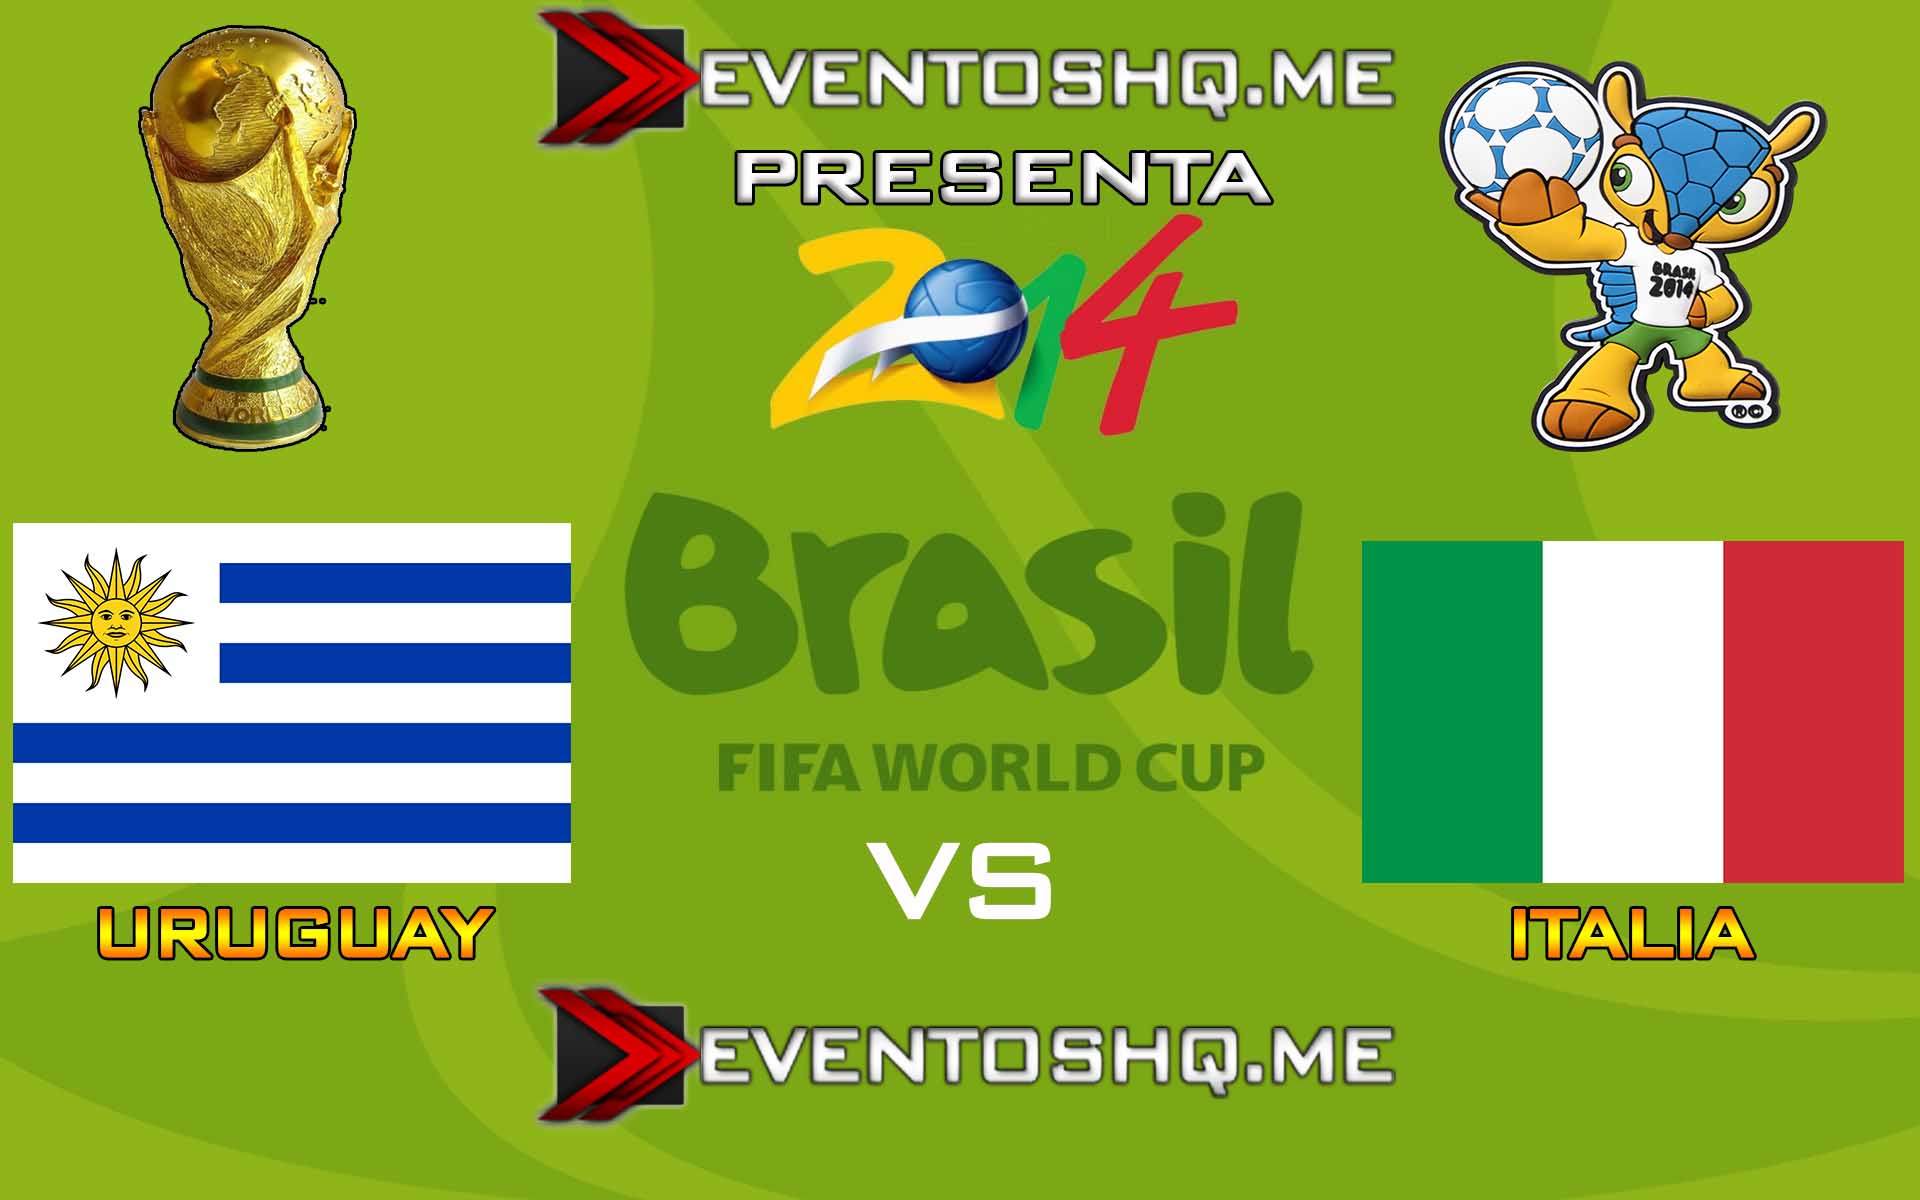 Ver en Vivo Uruguay vs Italia Mundial Brasil 2014 www.eventoshq.me